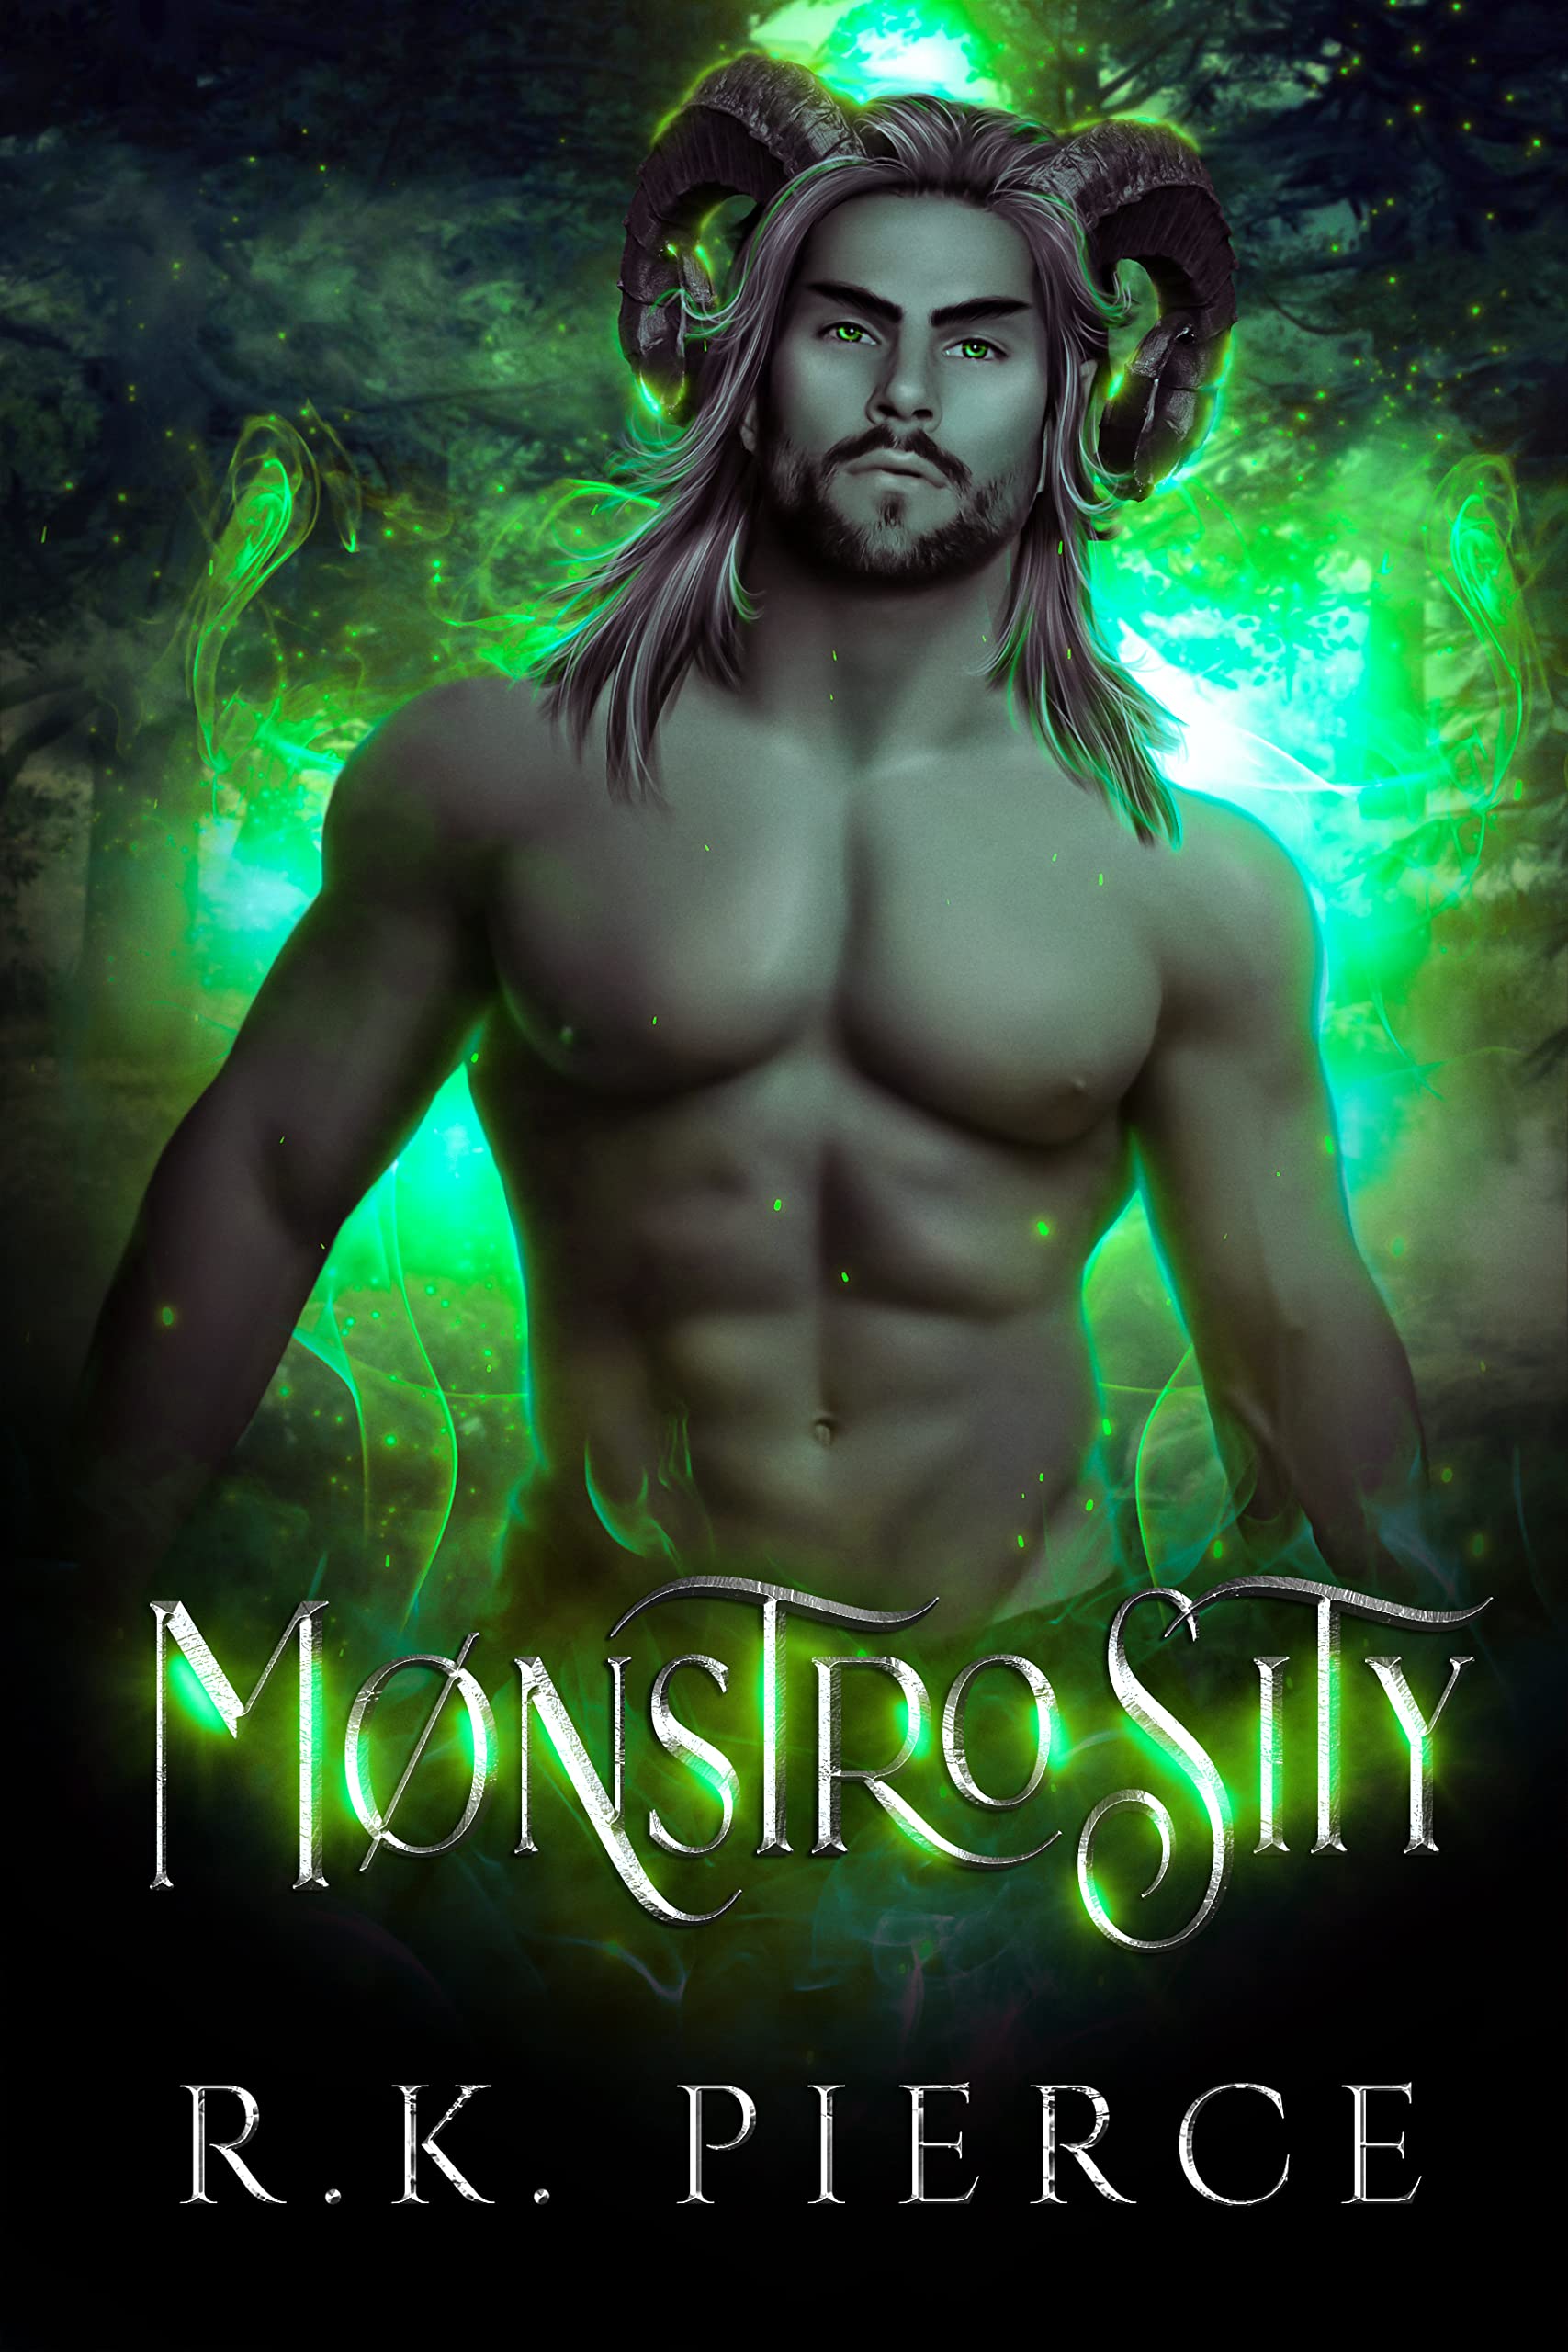 Monstrosity by R.K. Pierce PDF Download